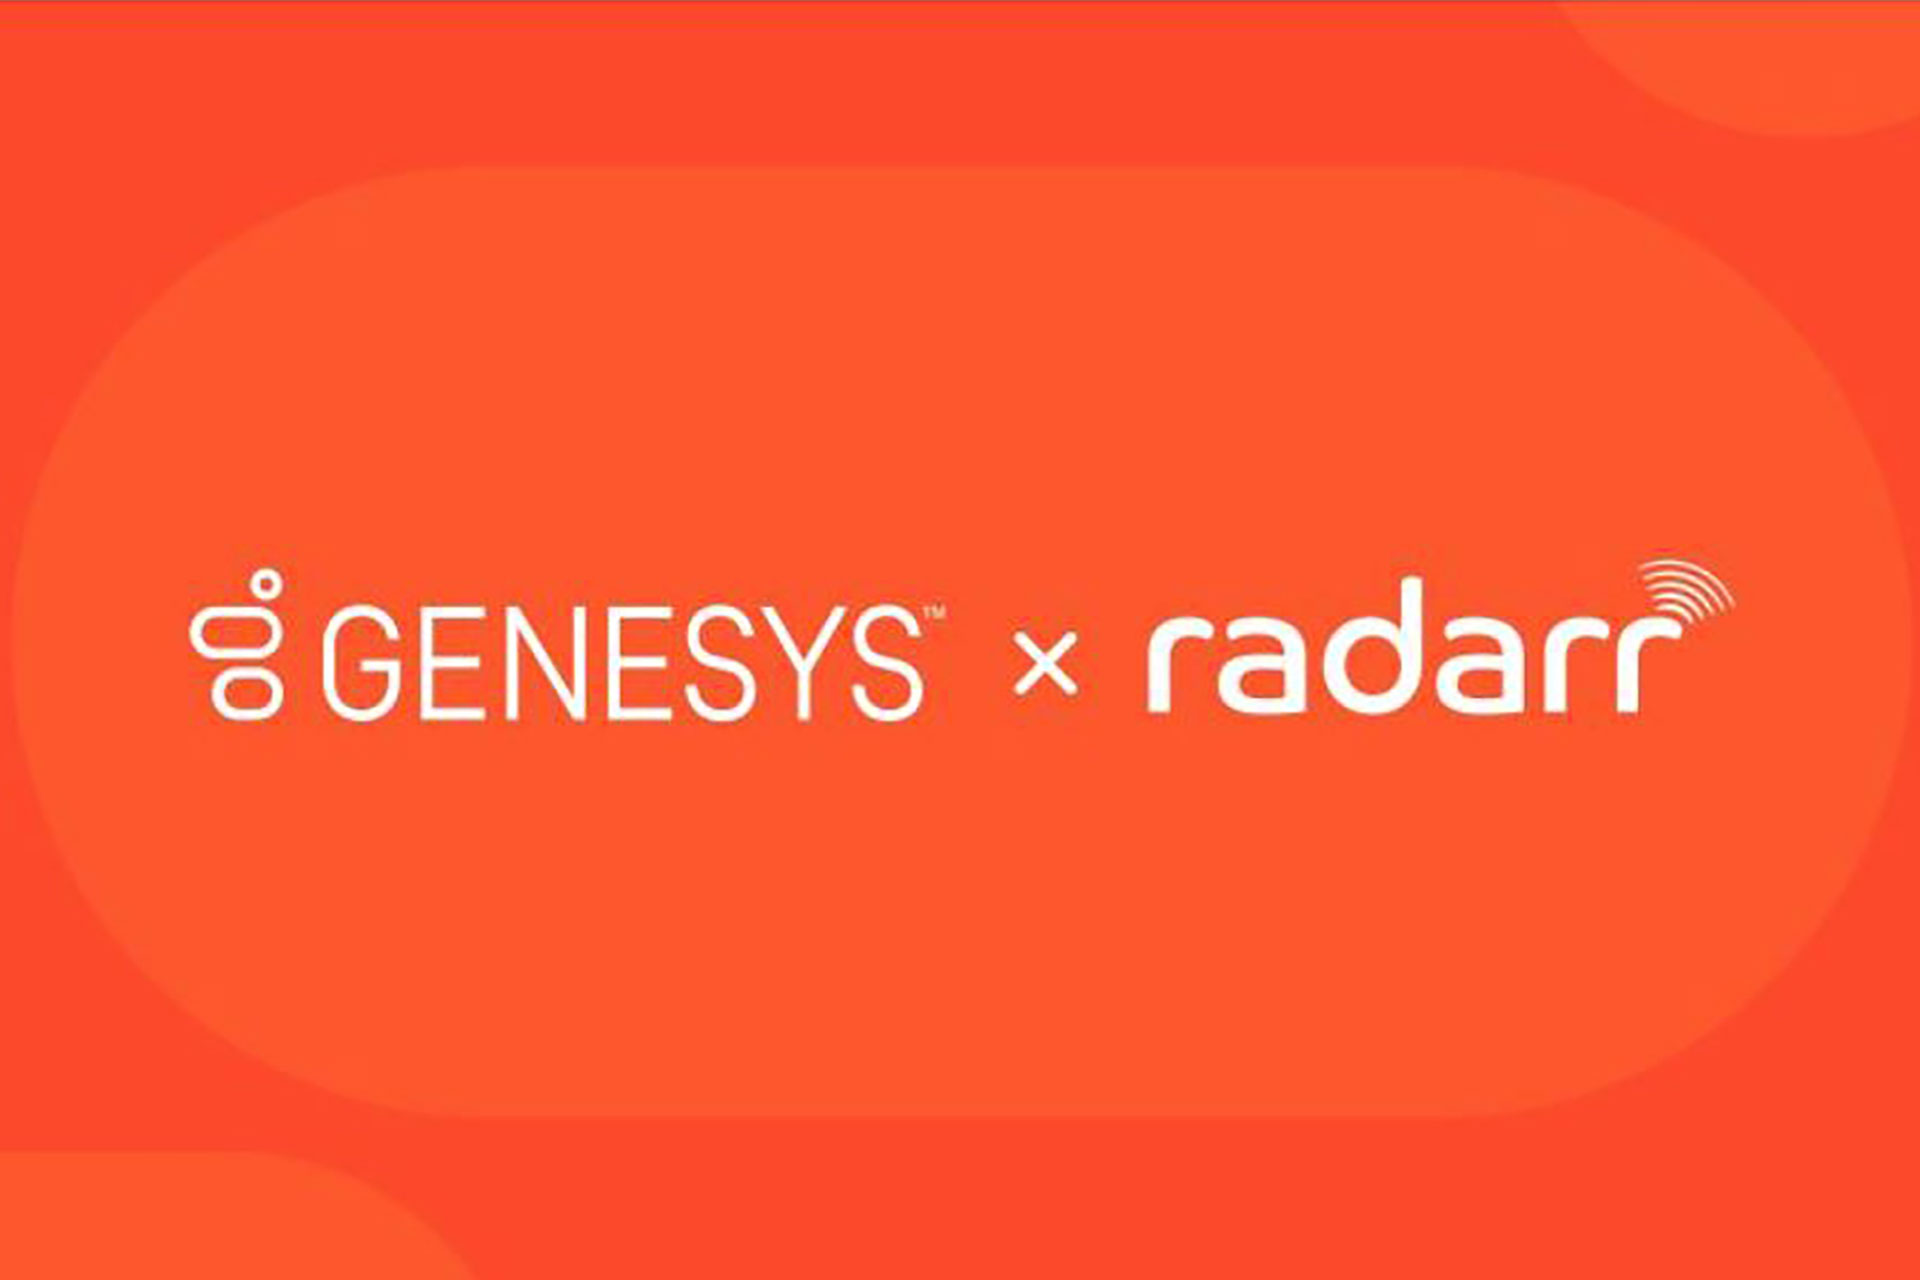 Genesys kündigt die Übernahme von Radarr Technologies an_cmm360.ch_Bild:https://www.genesys.com/